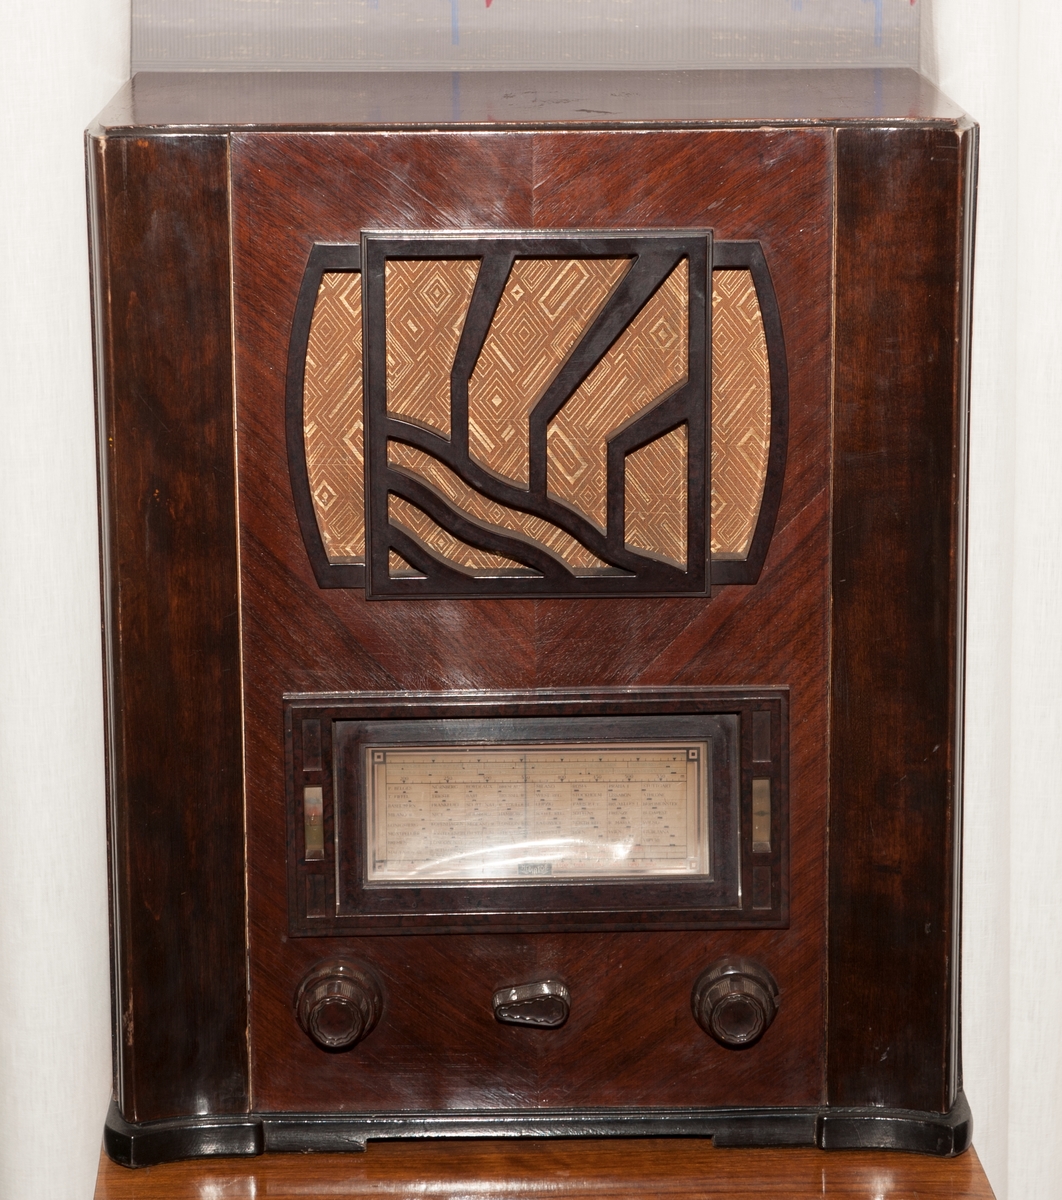 Radiokabinett i brunt tre med mørkebrunt listverk. 
3 innstillingsknapper og  Art-Deco-dekor på front. 